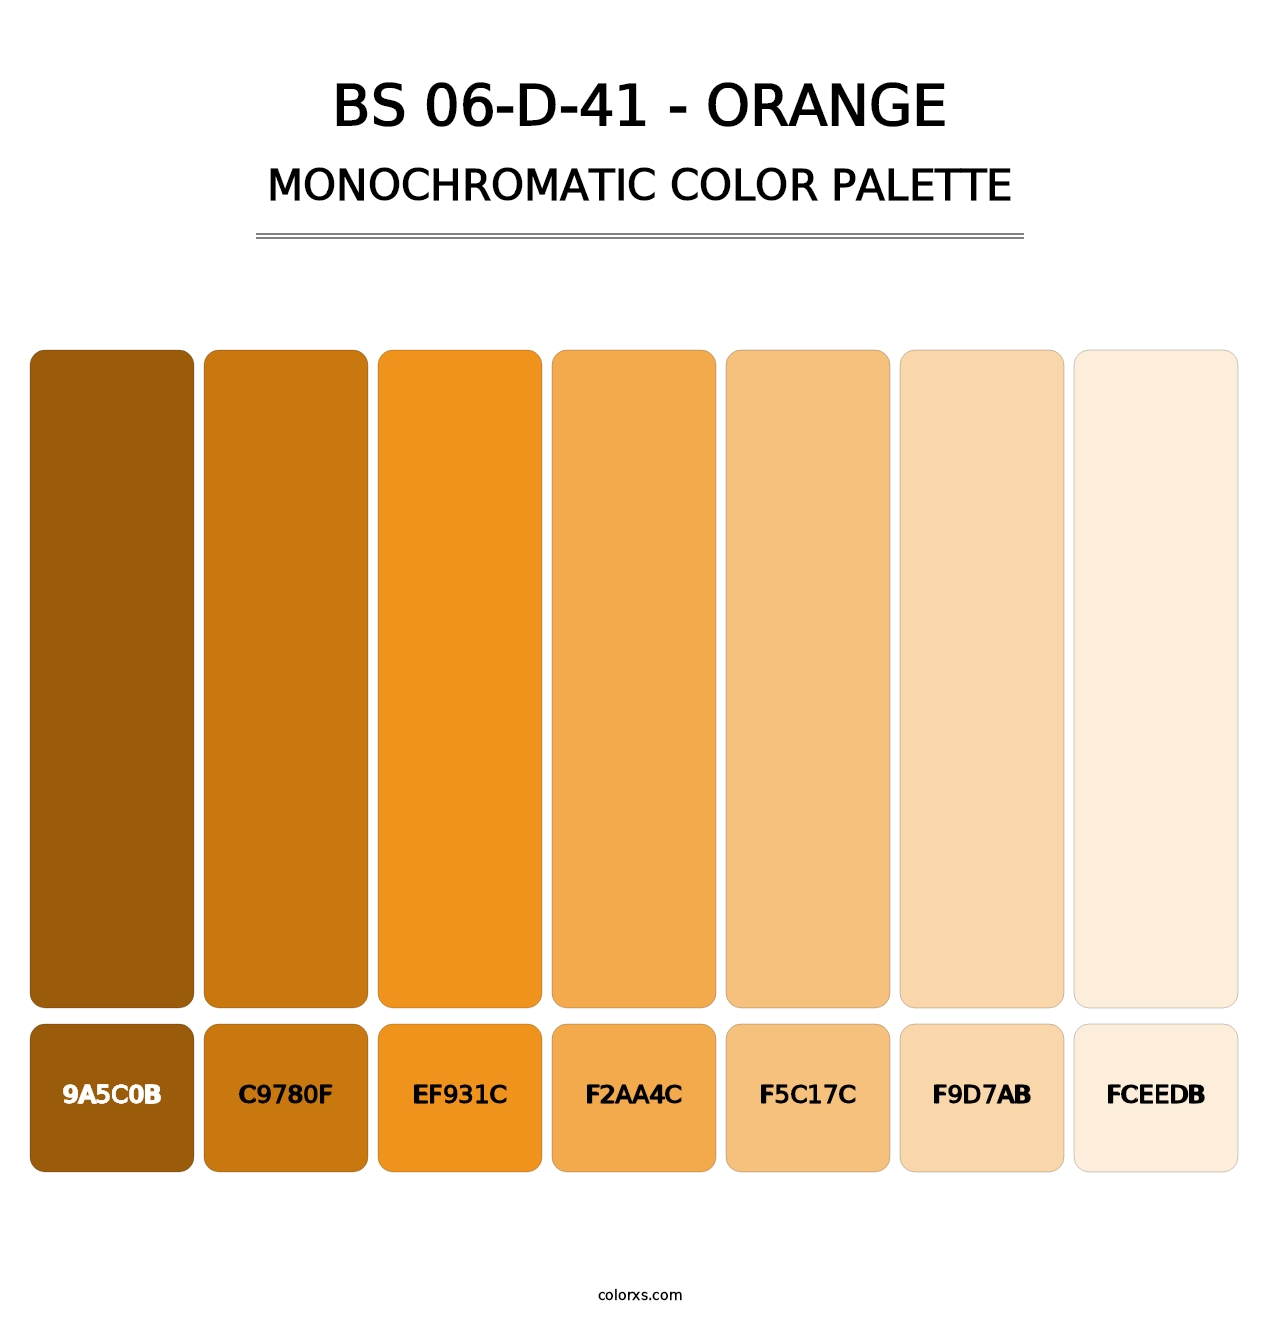 BS 06-D-41 - Orange - Monochromatic Color Palette